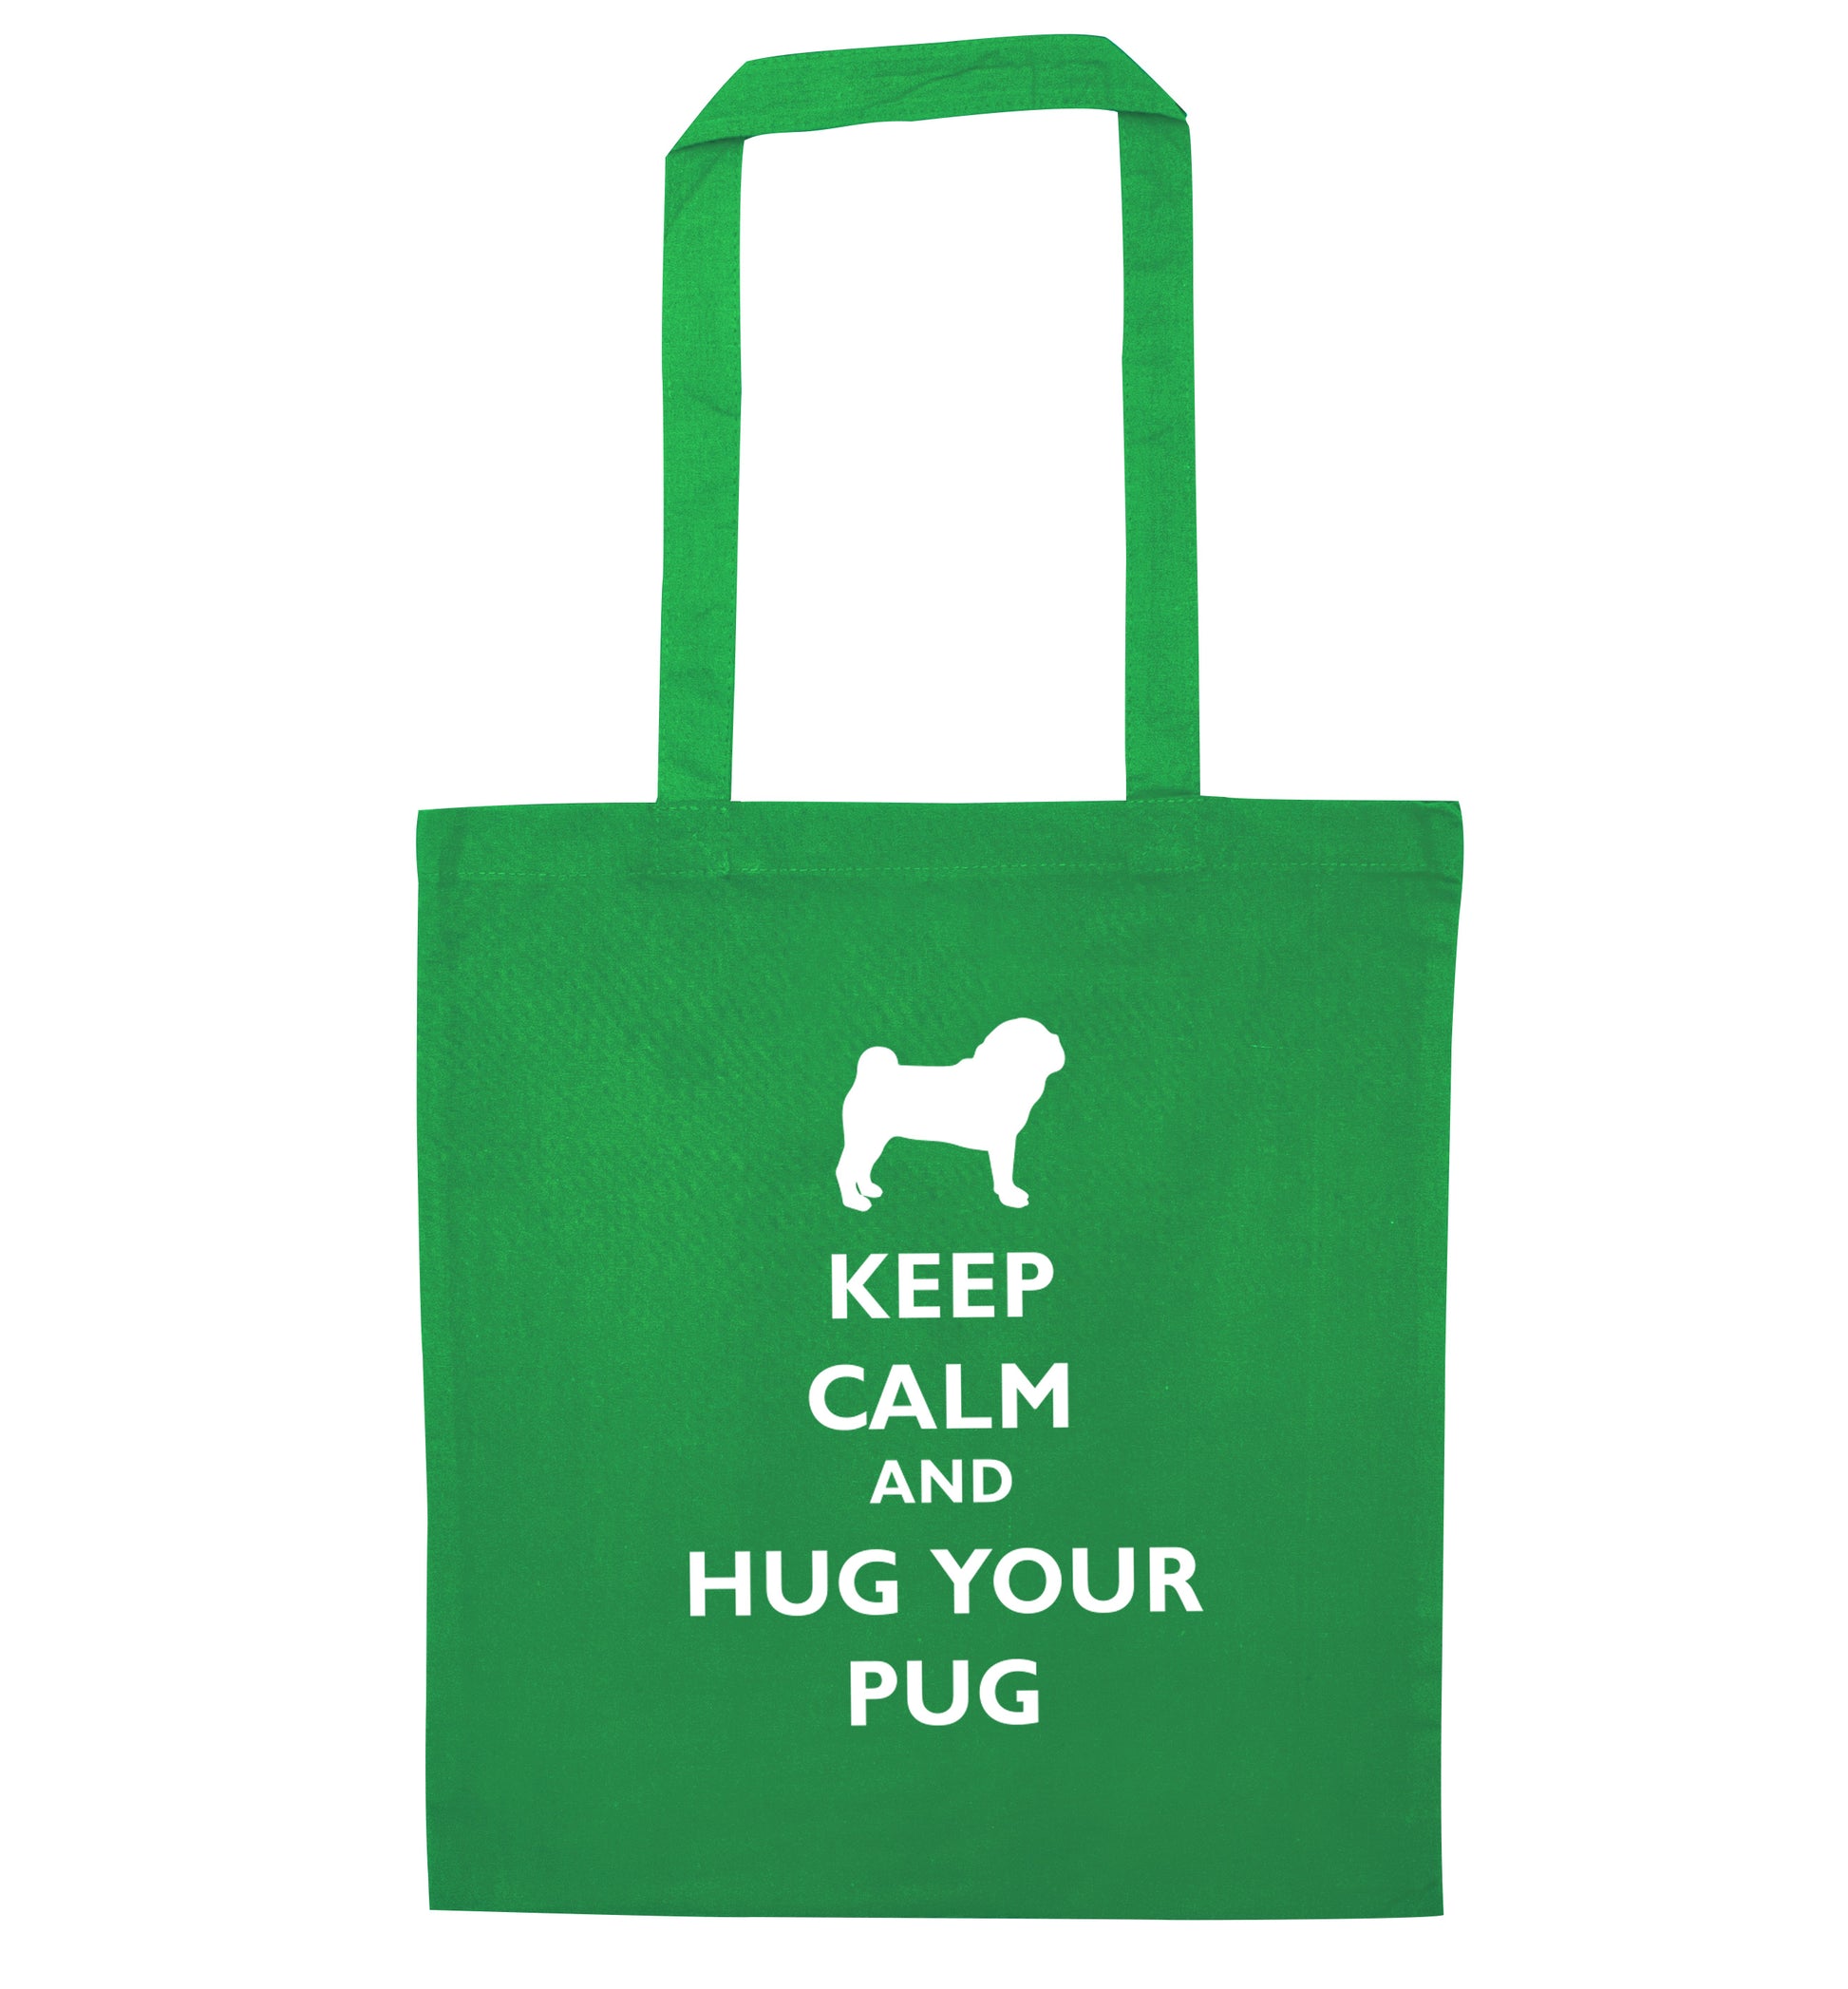 Keep calm and hug your pug green tote bag